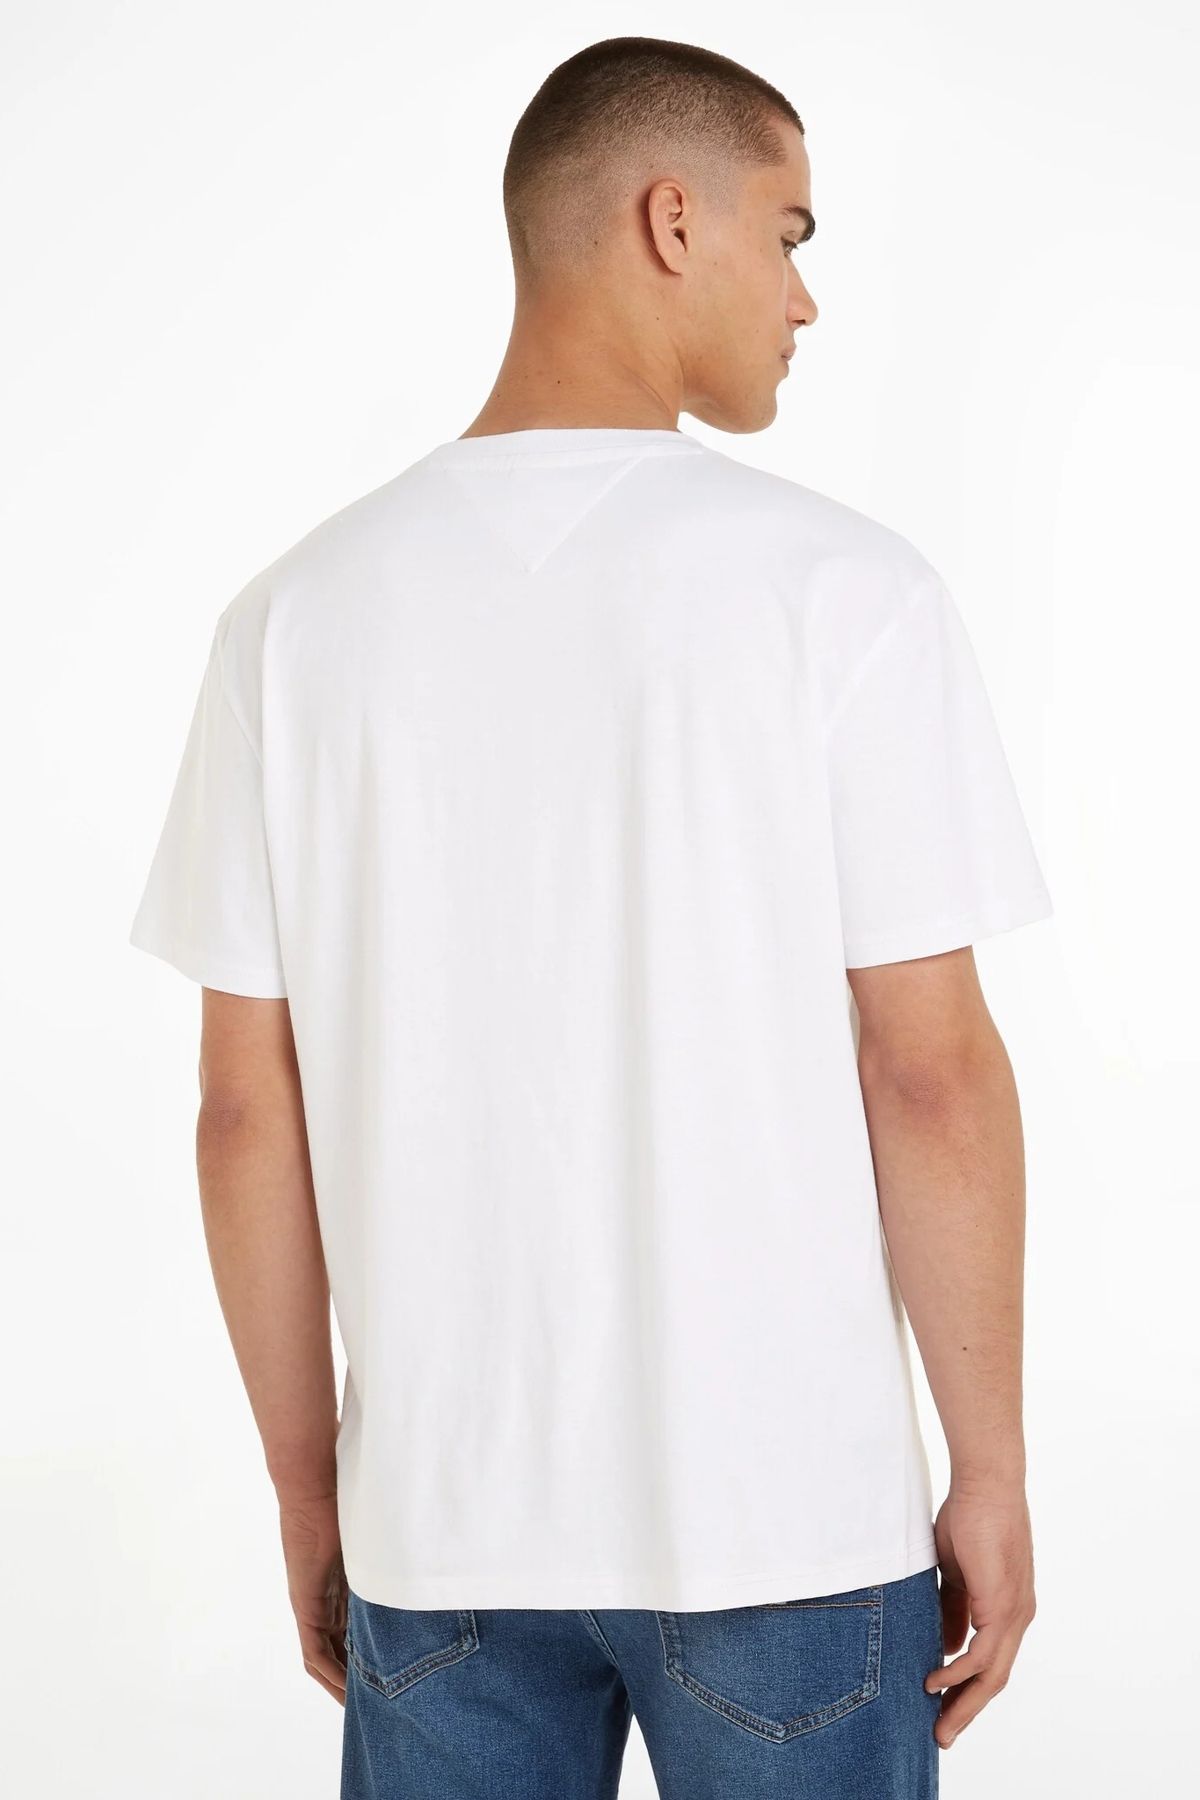 Tommy Hilfiger Erkek Marka Logolu Günlük Kullanıma Uygun Beyaz T-shirt Dm0dm17993-ybr